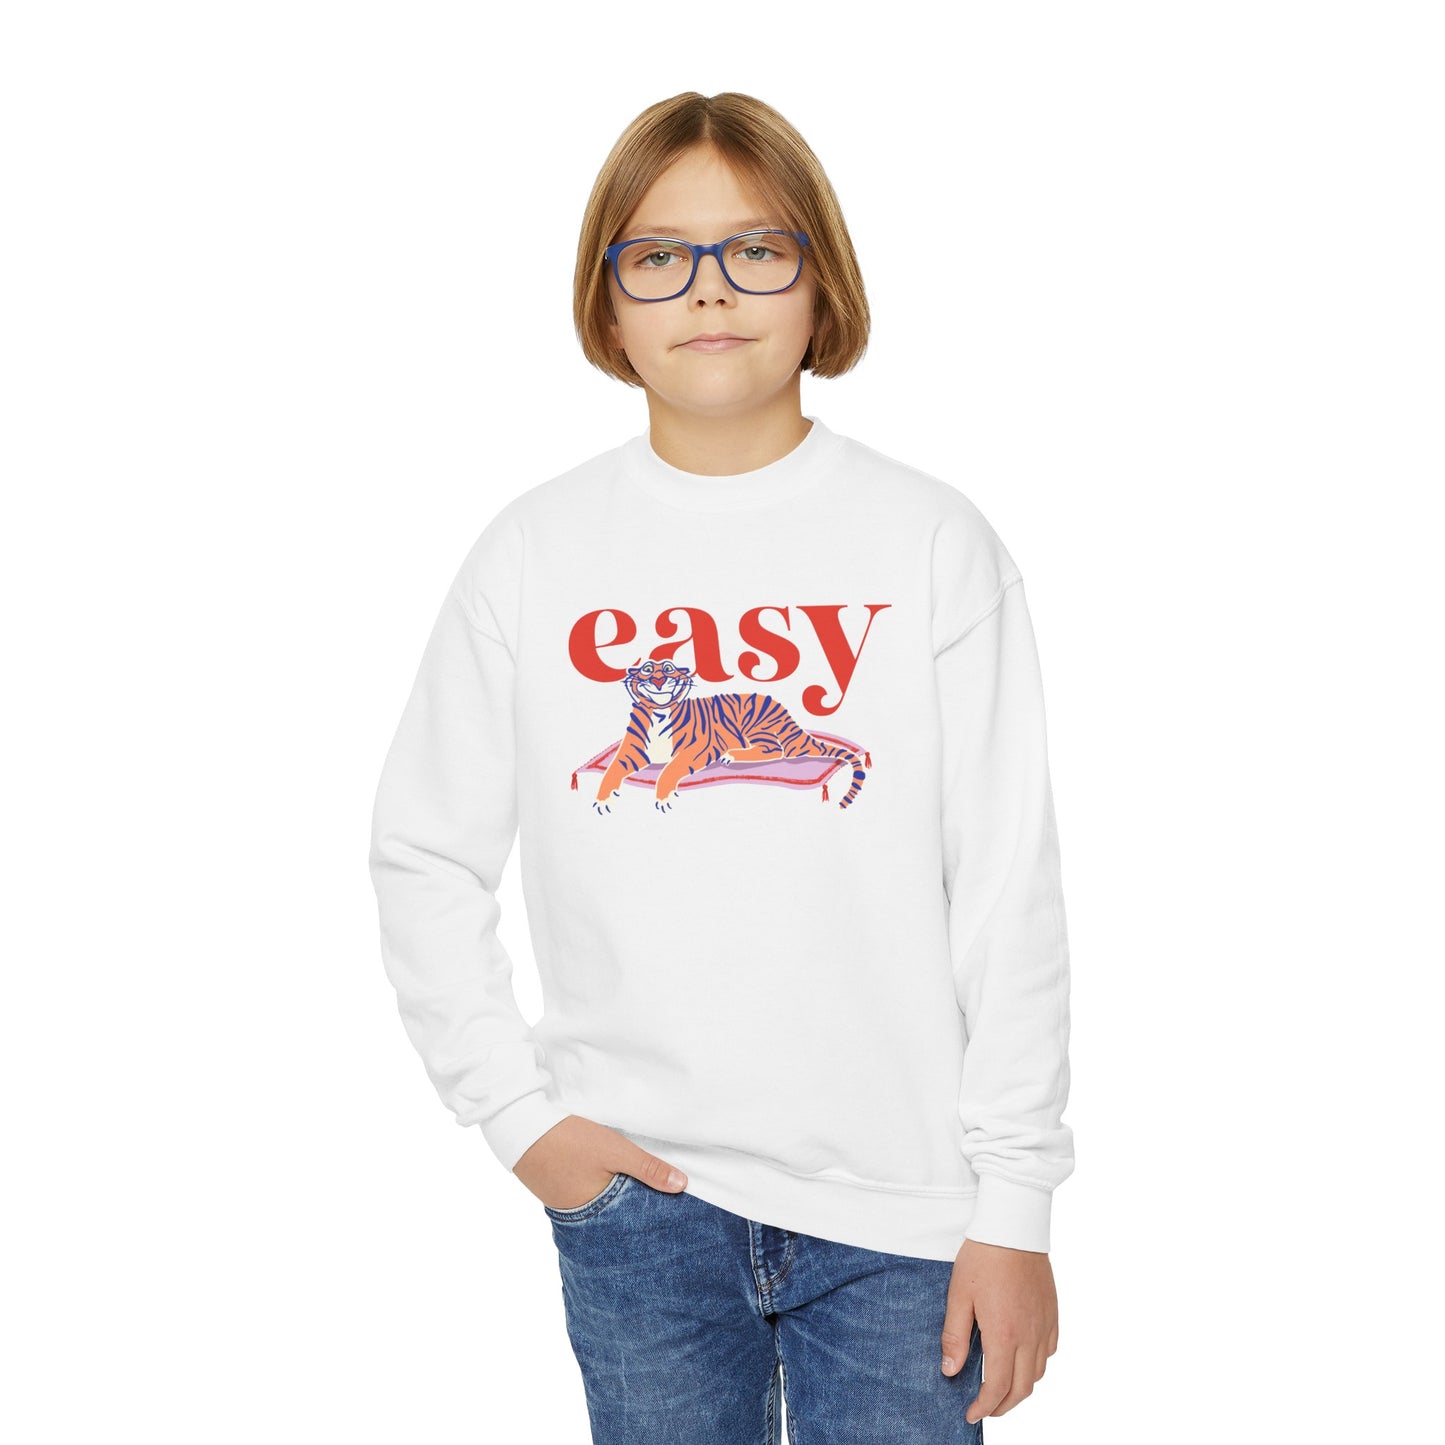 Easy Tiger - Youth Crewneck Sweatshirt